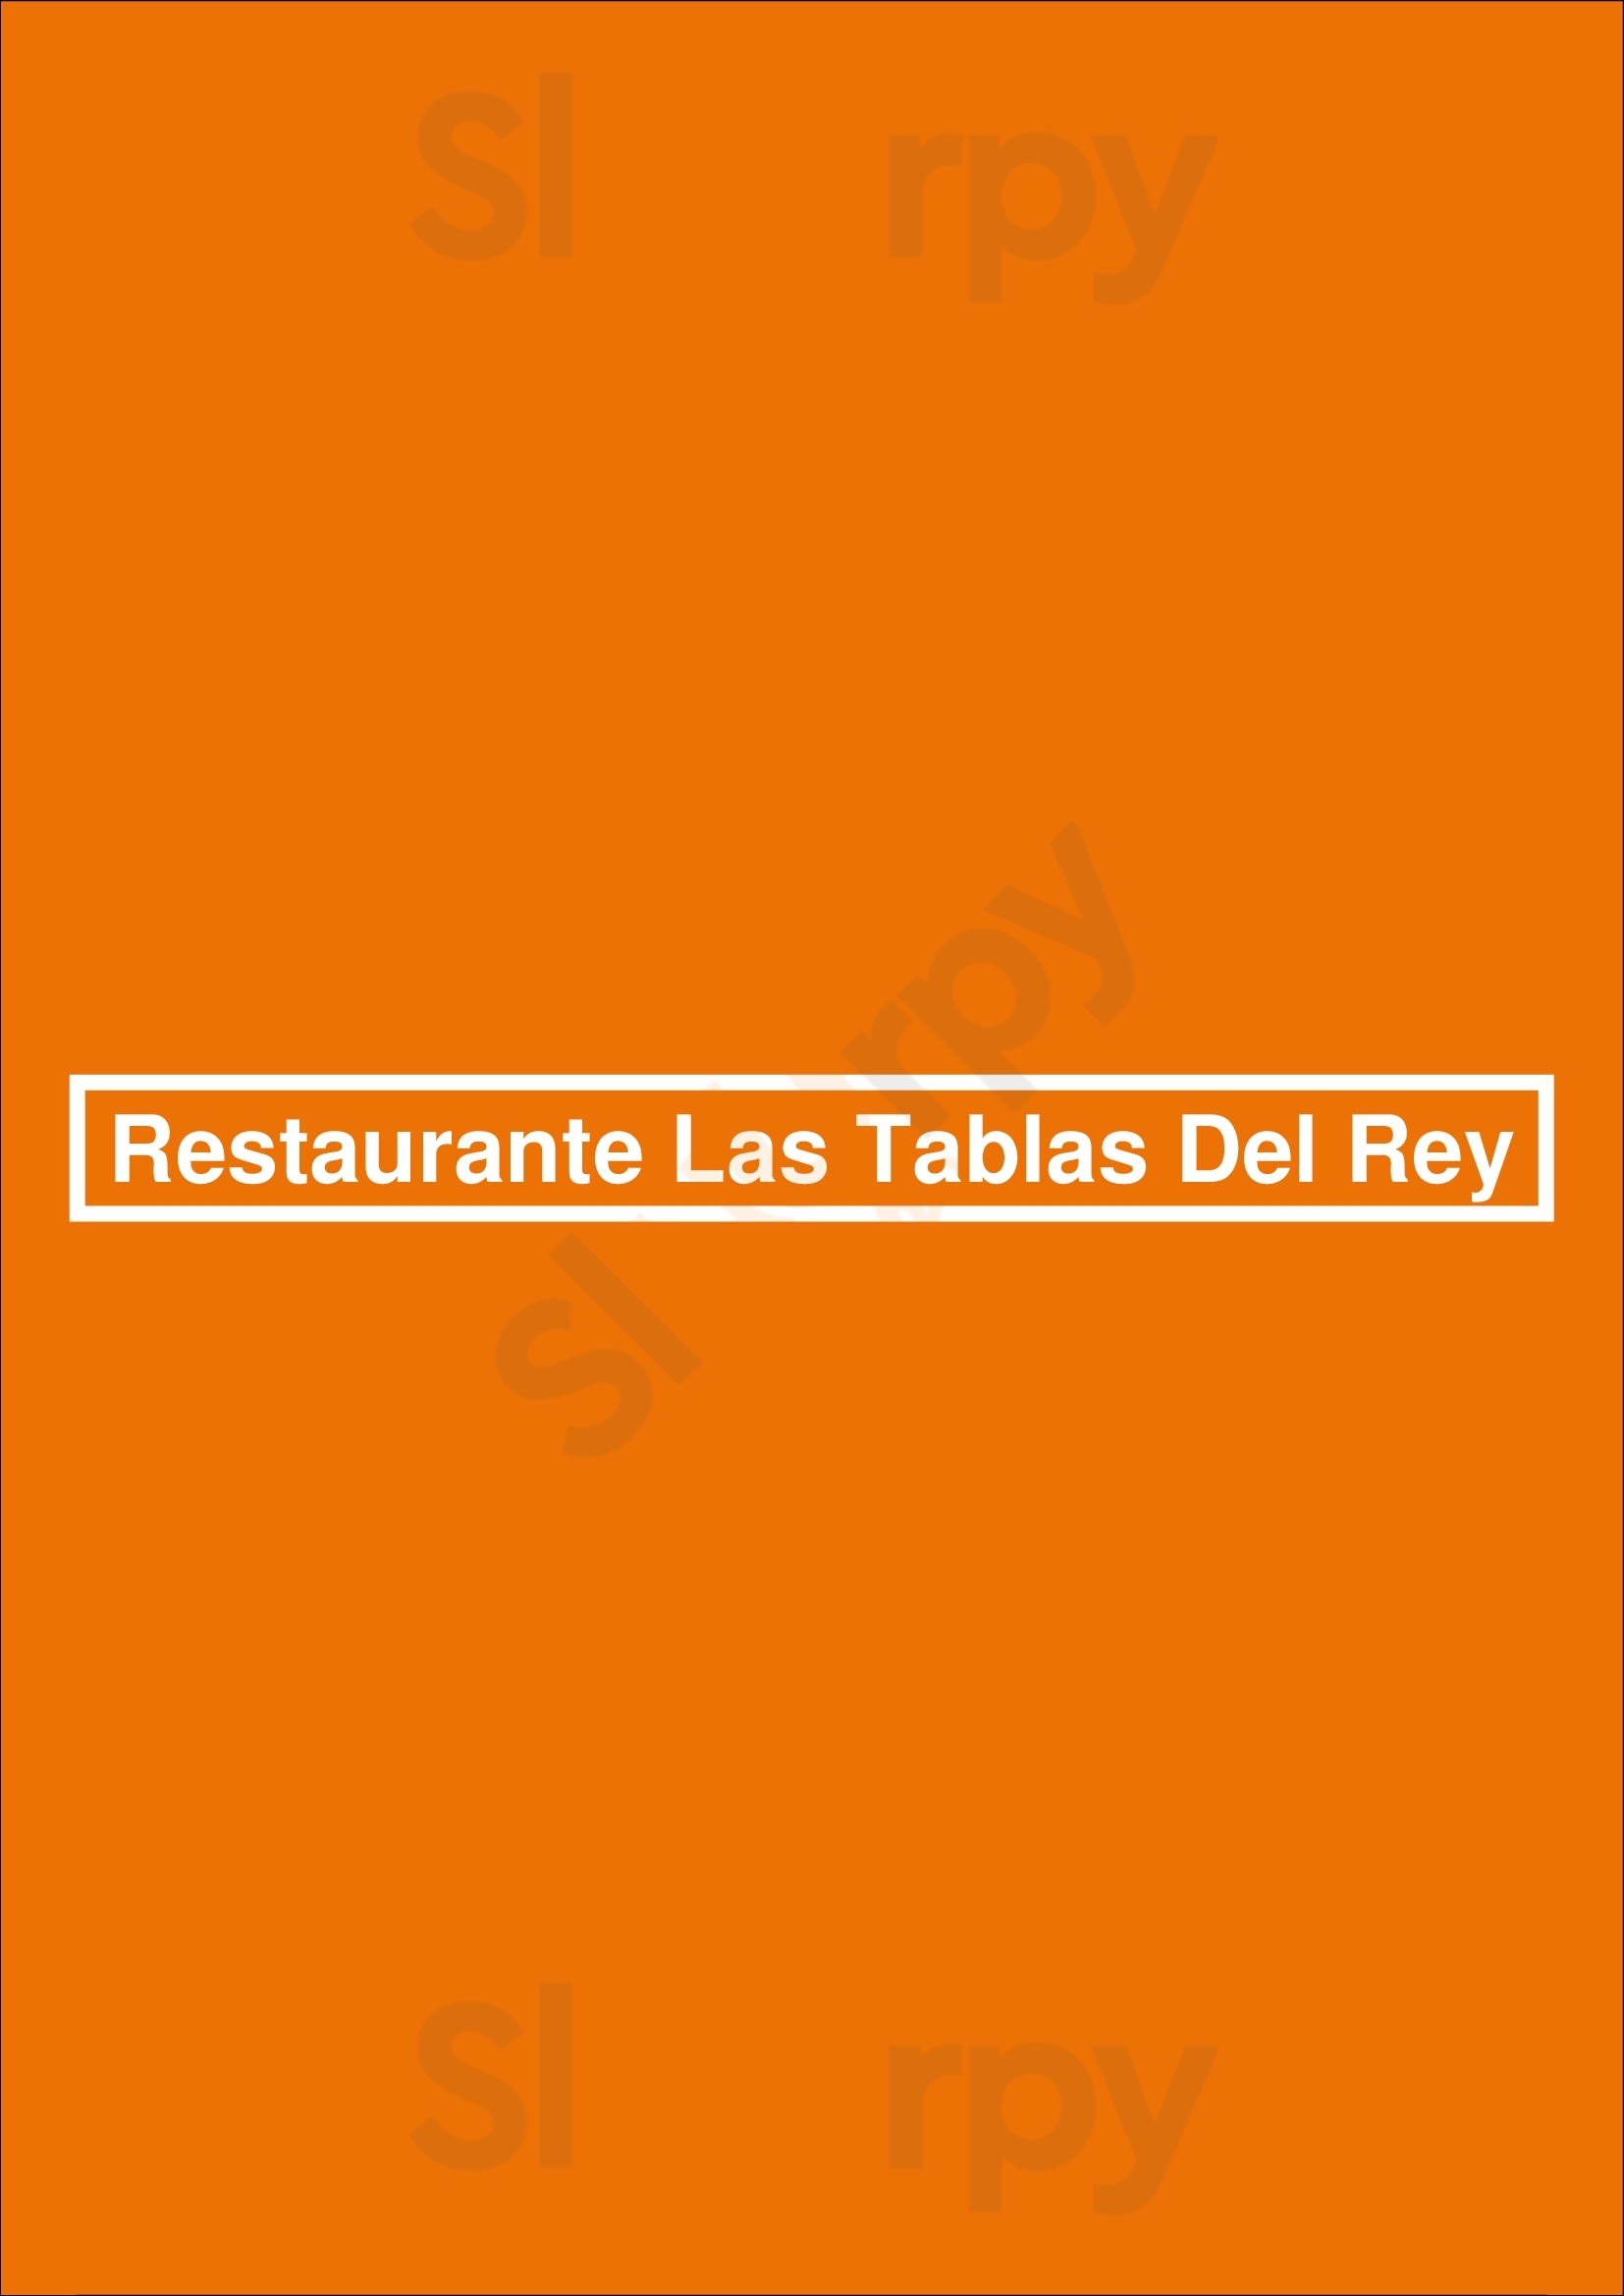 Restaurante Las Tablas Del Rey Fuengirola Menu - 1